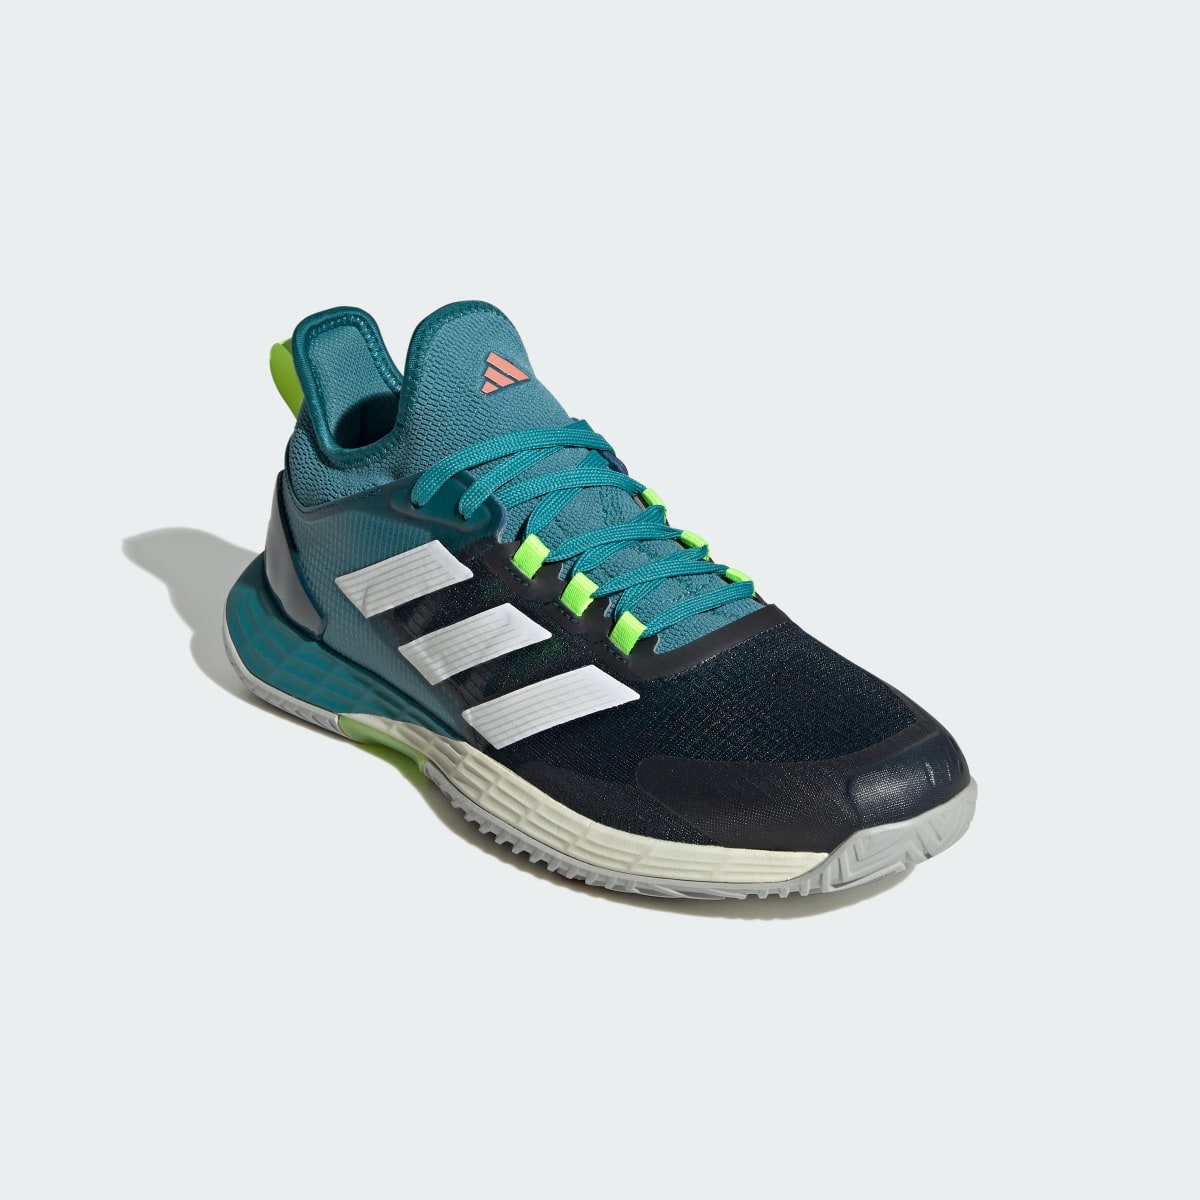 Adidas Adizero Ubersonic 4.1 Tennis Shoes. 5